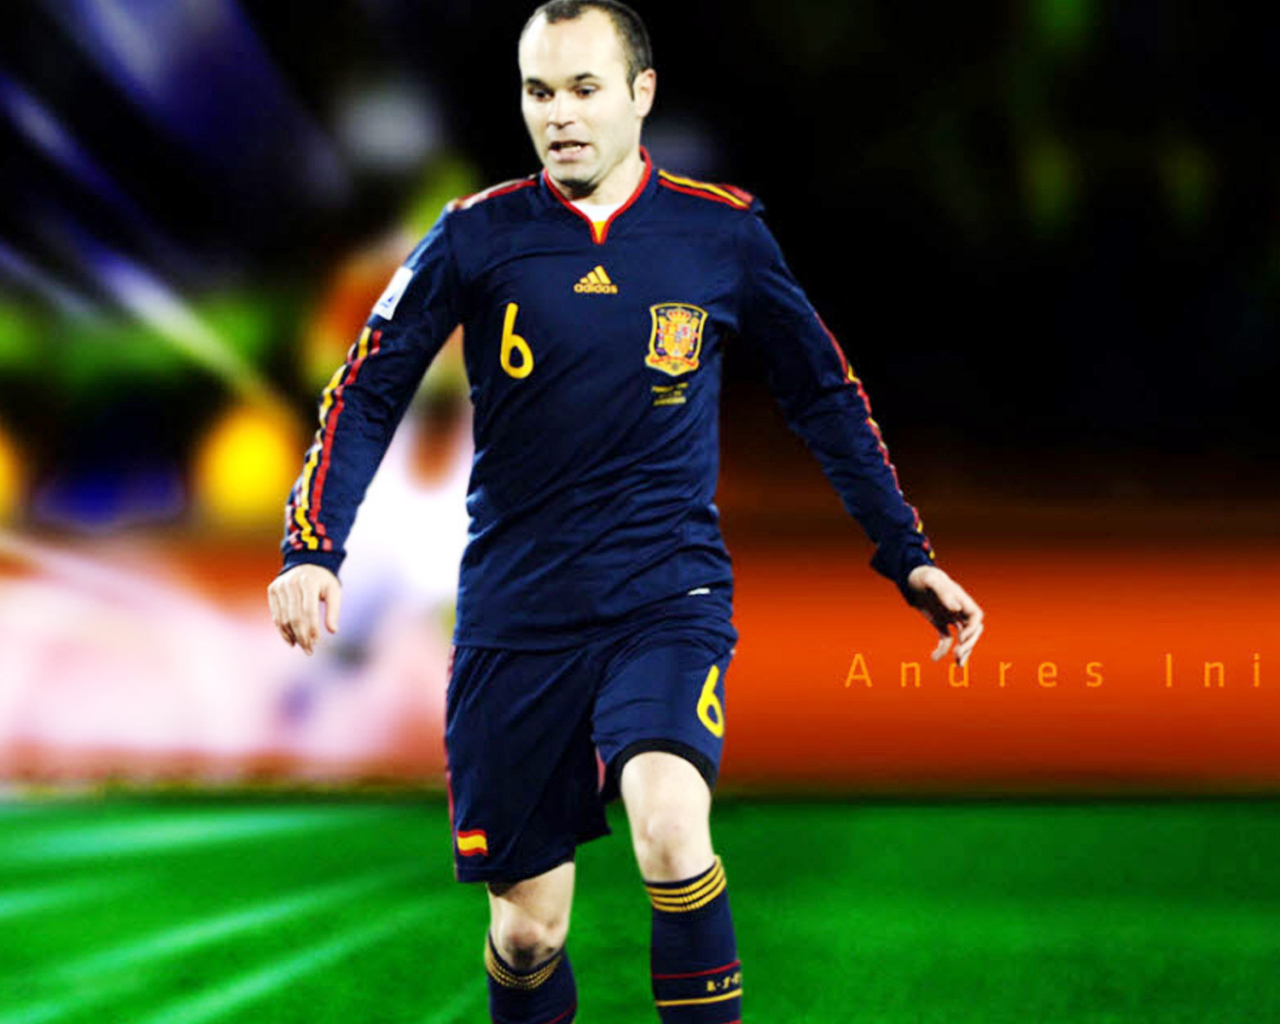 Игрок Барселоны Андрес Иньеста на поле